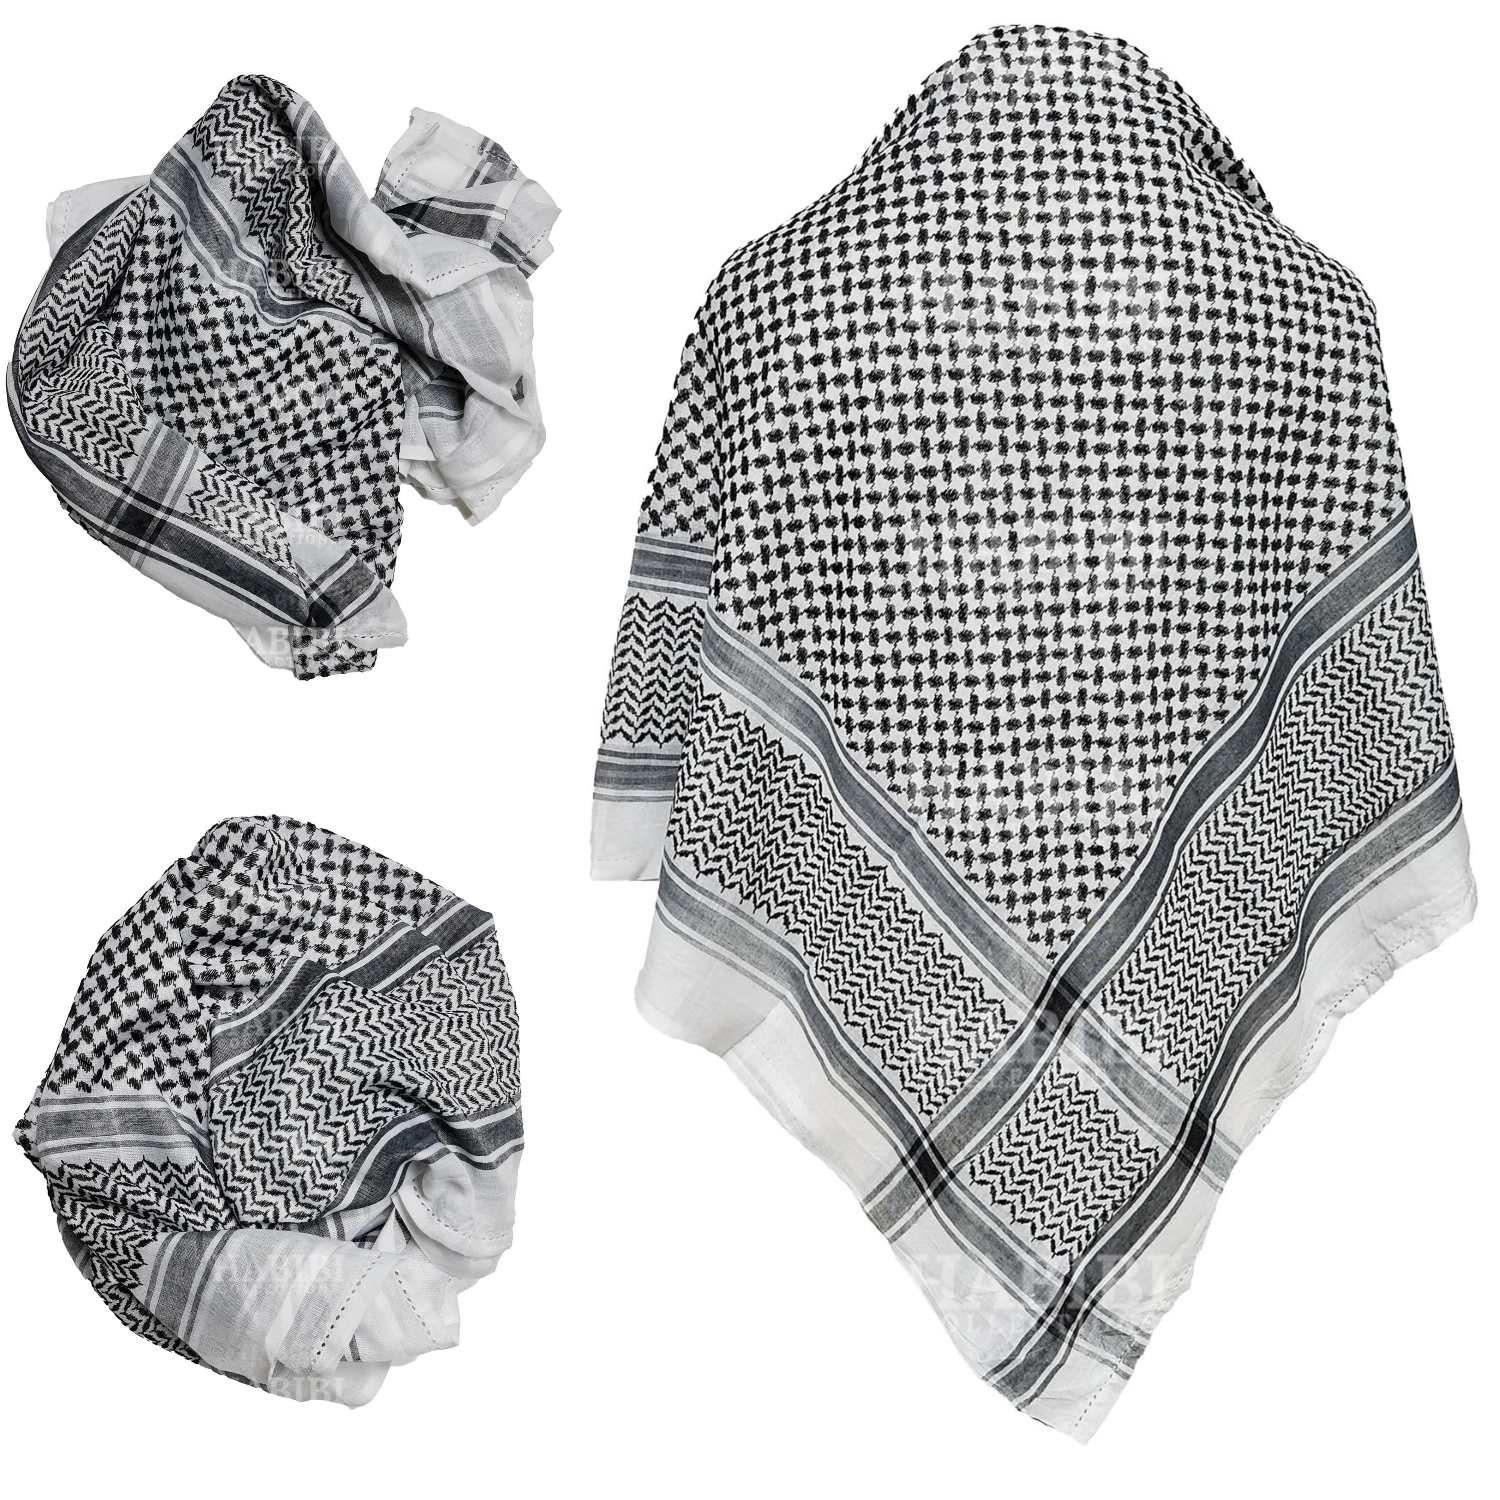 Acheter Keffieh foulard palestinien gris de qualité supérieure